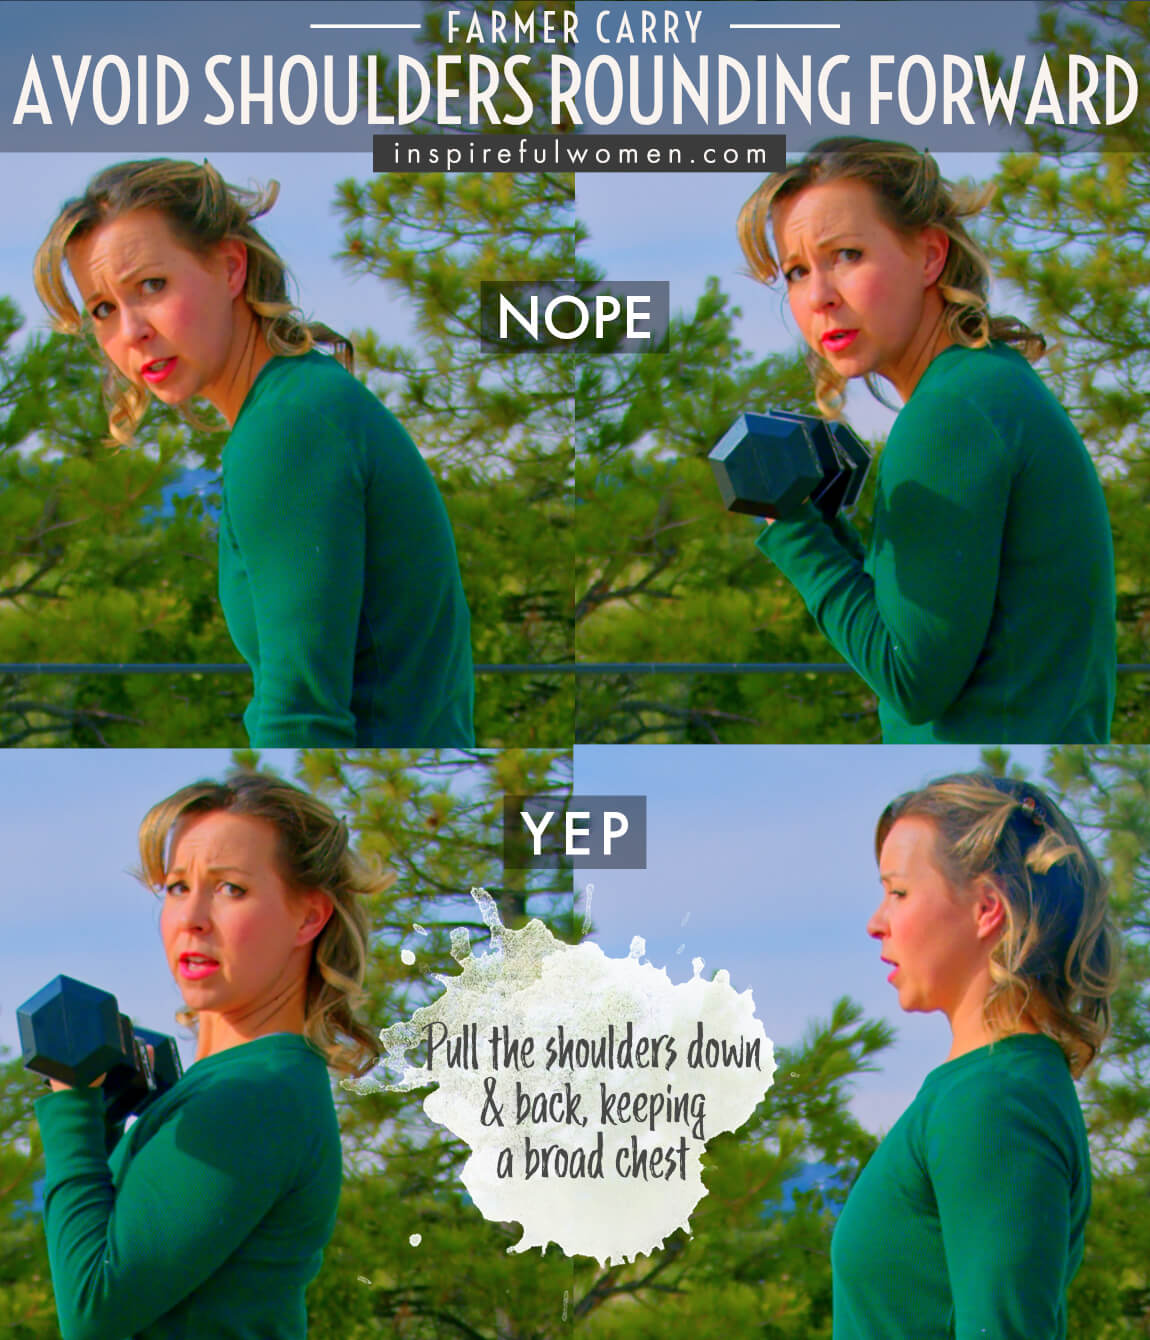 avoid-shoulders-rounding-forward-farmer-carry-dumbbell-total-body-core-exercise-proper-form